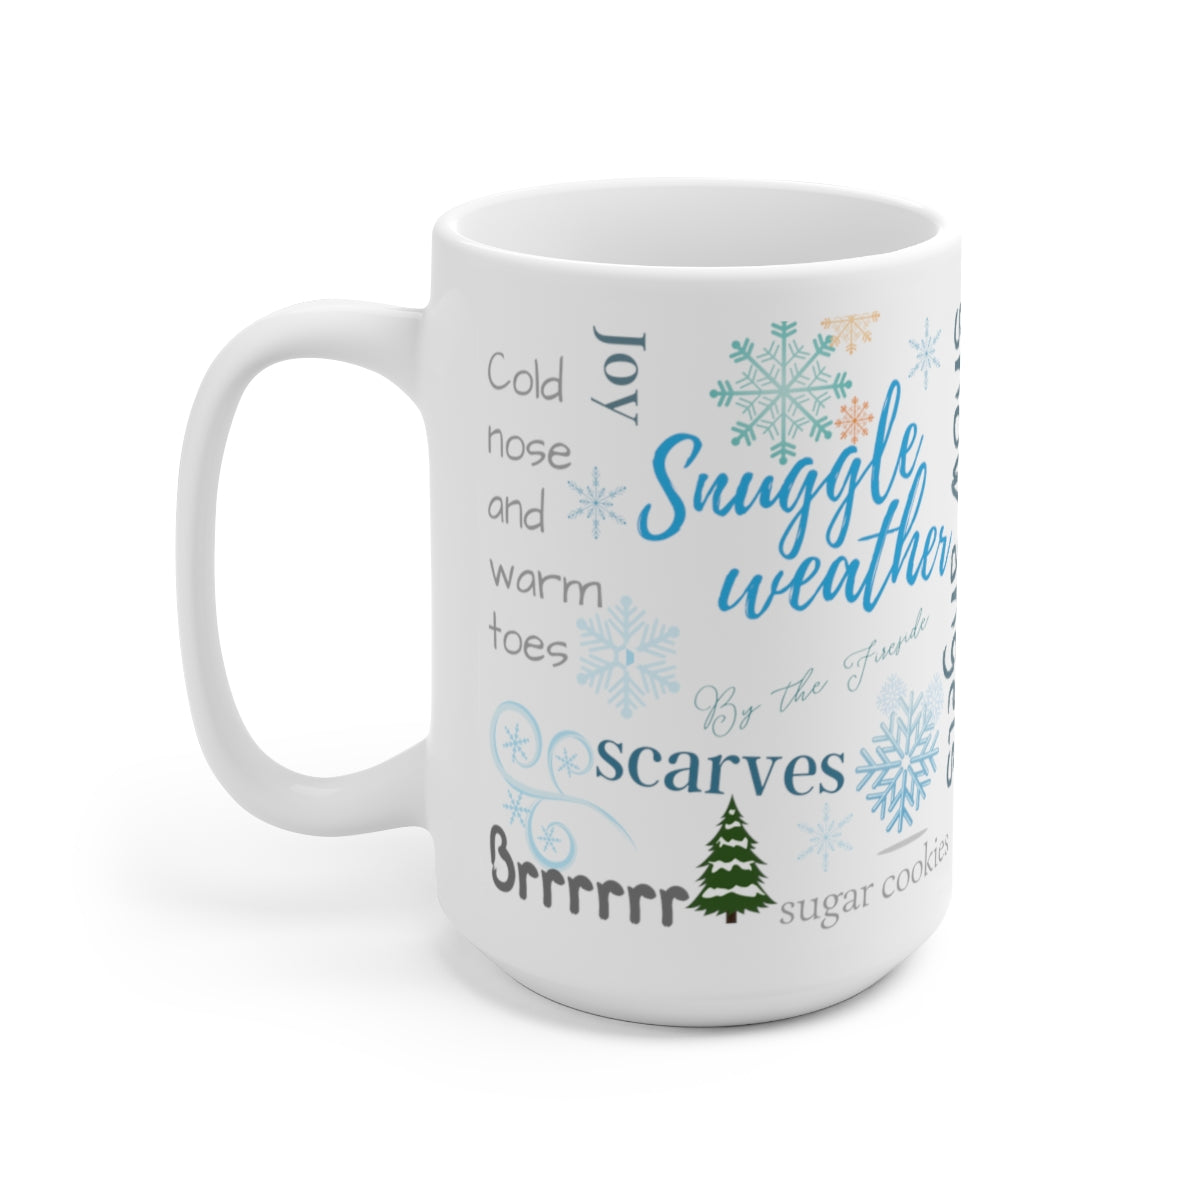 winter wonderland mug with words